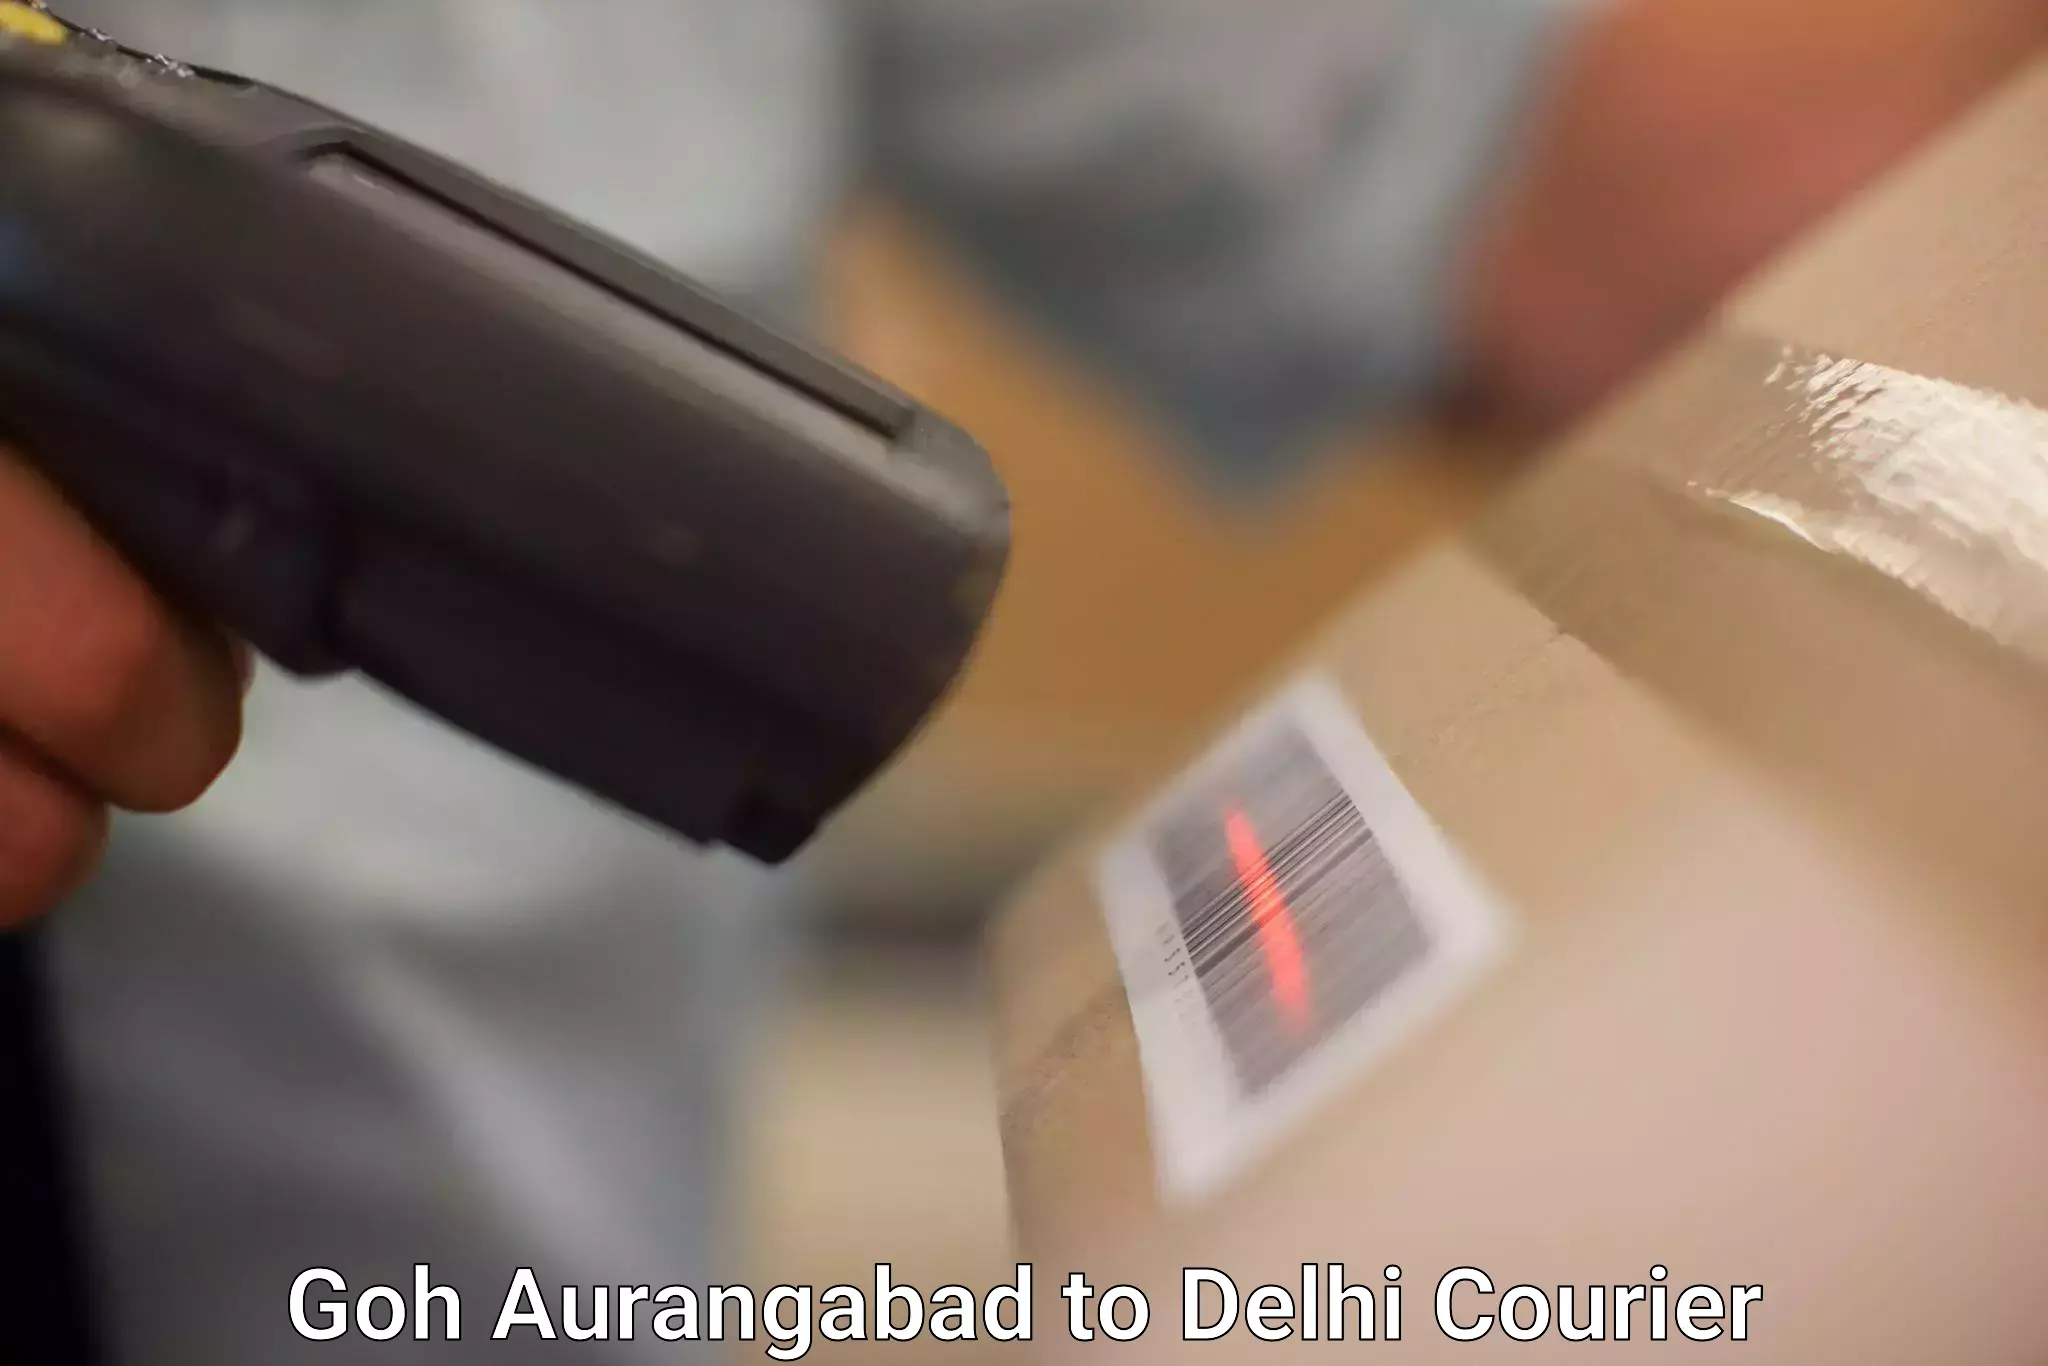 Next day courier Goh Aurangabad to Delhi